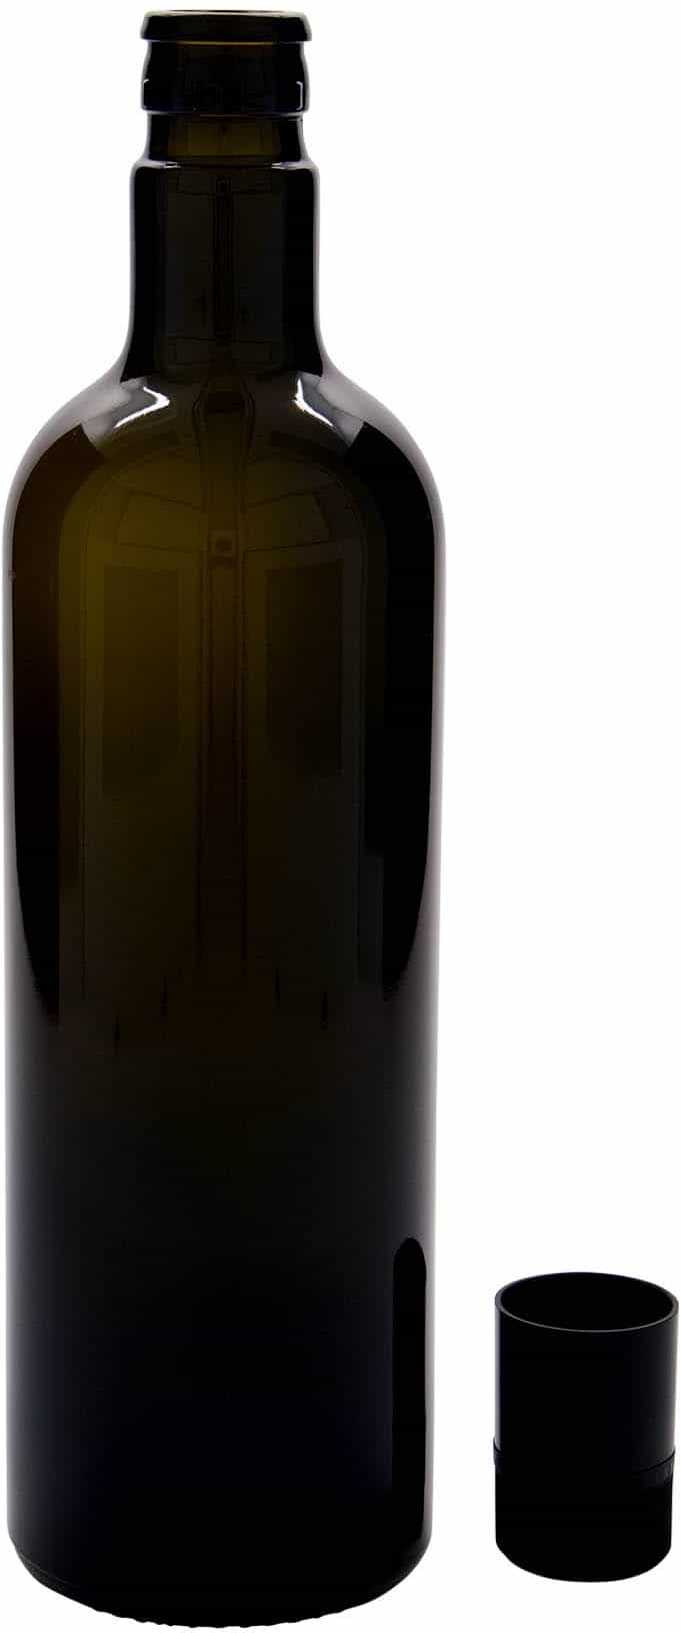 Azijn-/oliefles 'Willy New', 750 ml, glas, antiekgroen, monding: DOP